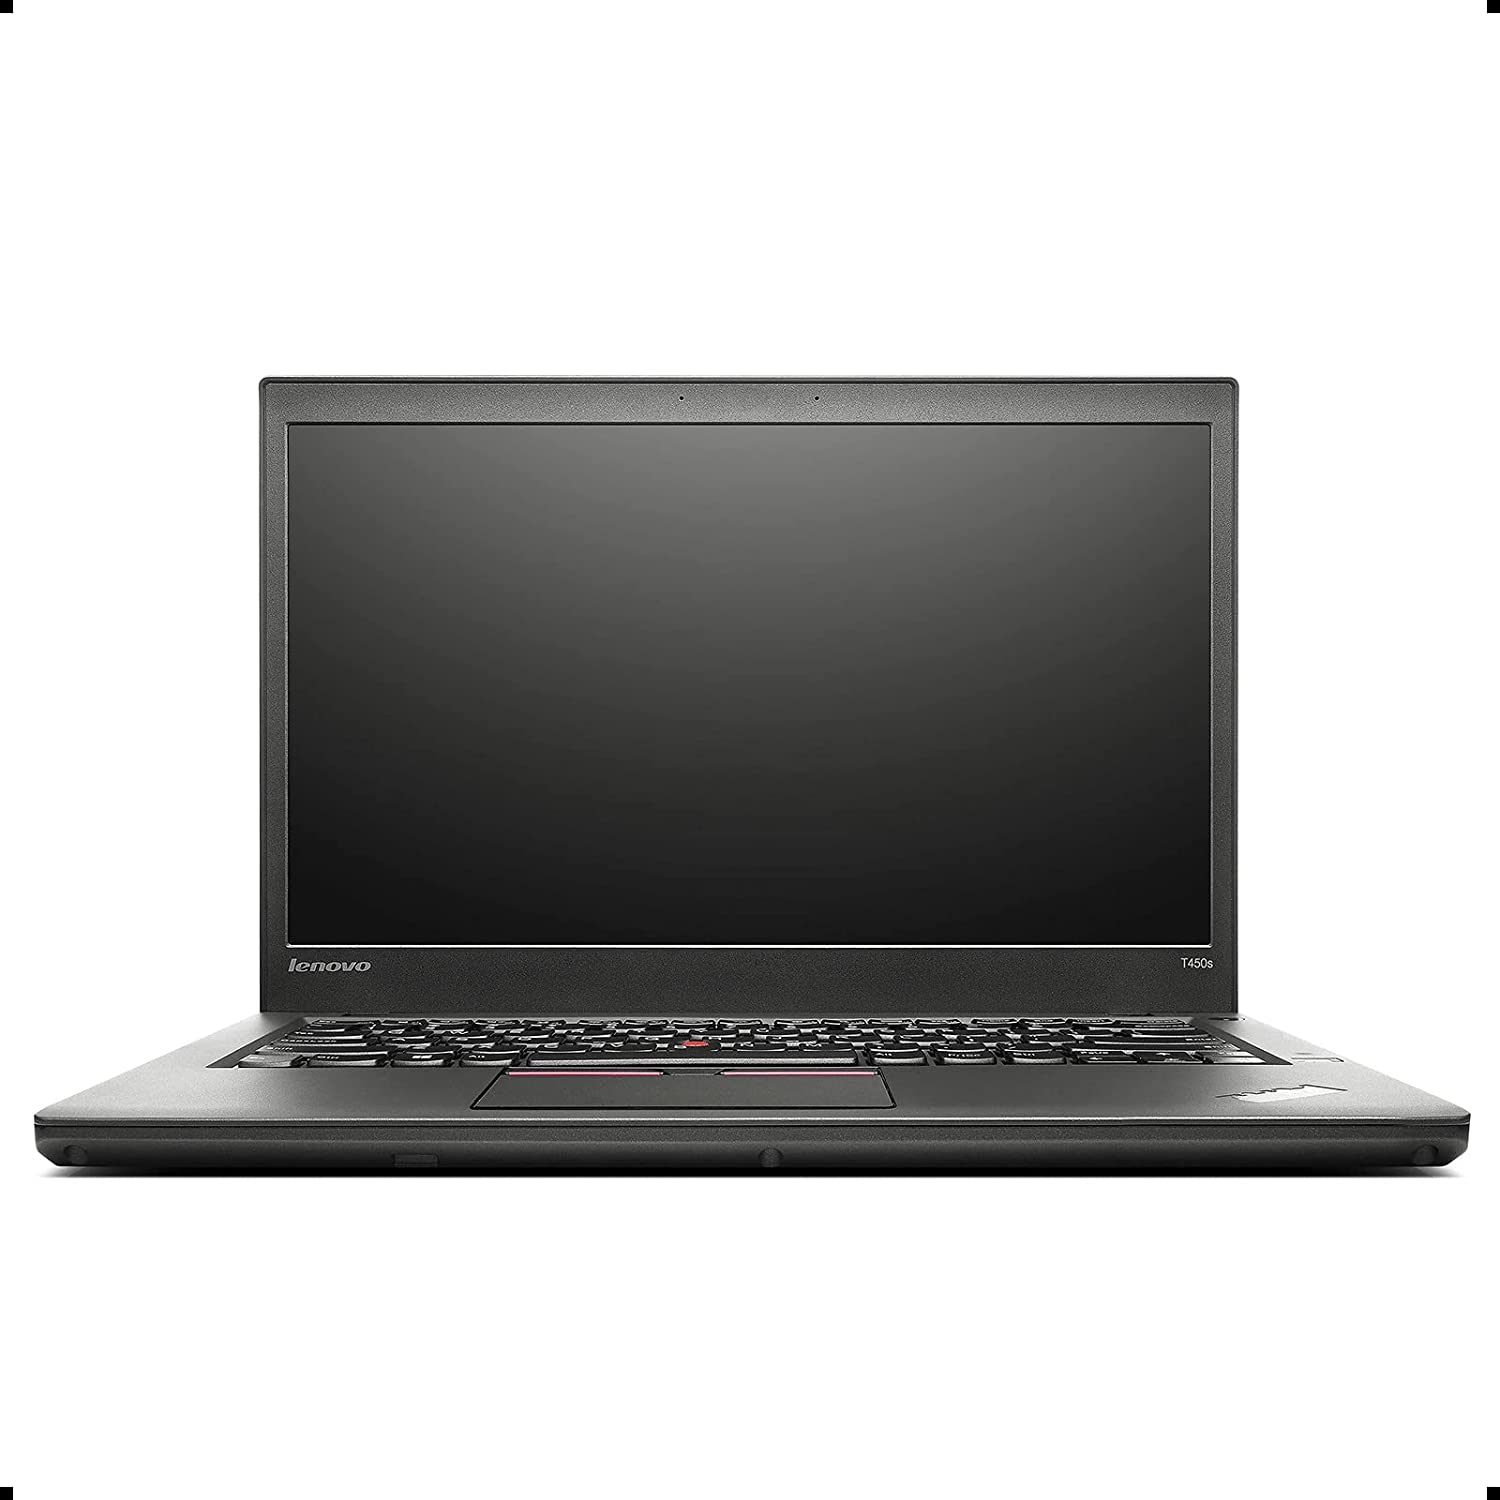 Đánh giá chi tiết Laptop ThinkPad T450 gọn nhẹ bền bỉ 